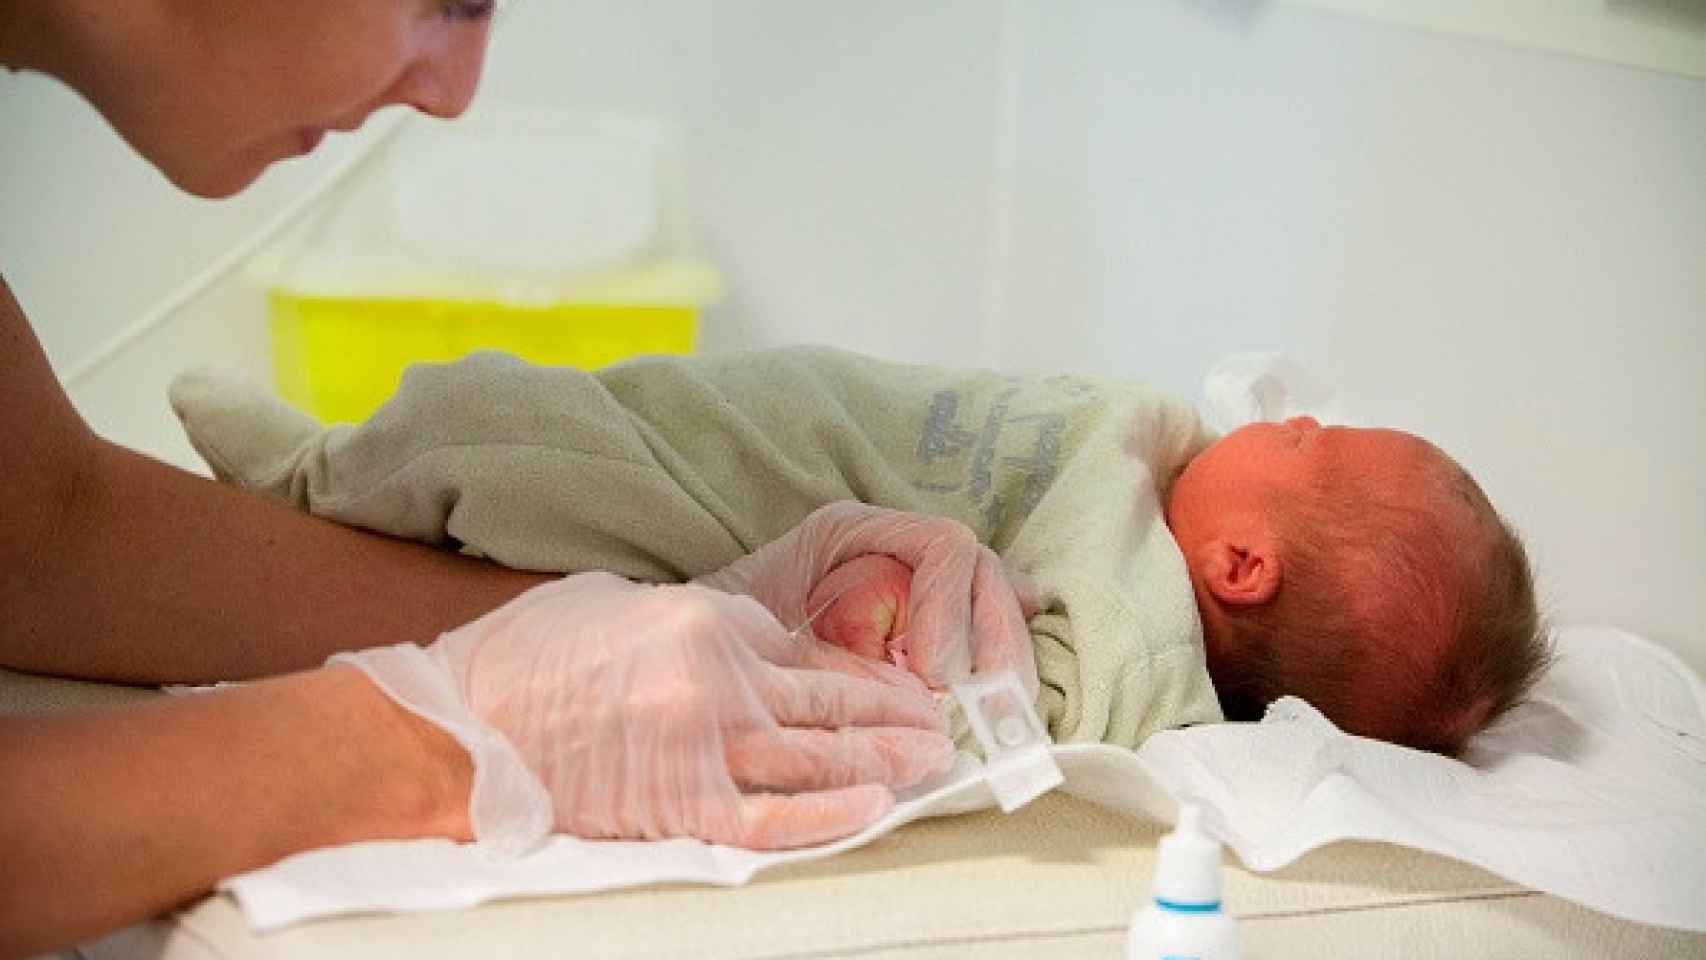 La prueba de Guthrie se hace para detectar enfermedades congénitas en recién nacidos.